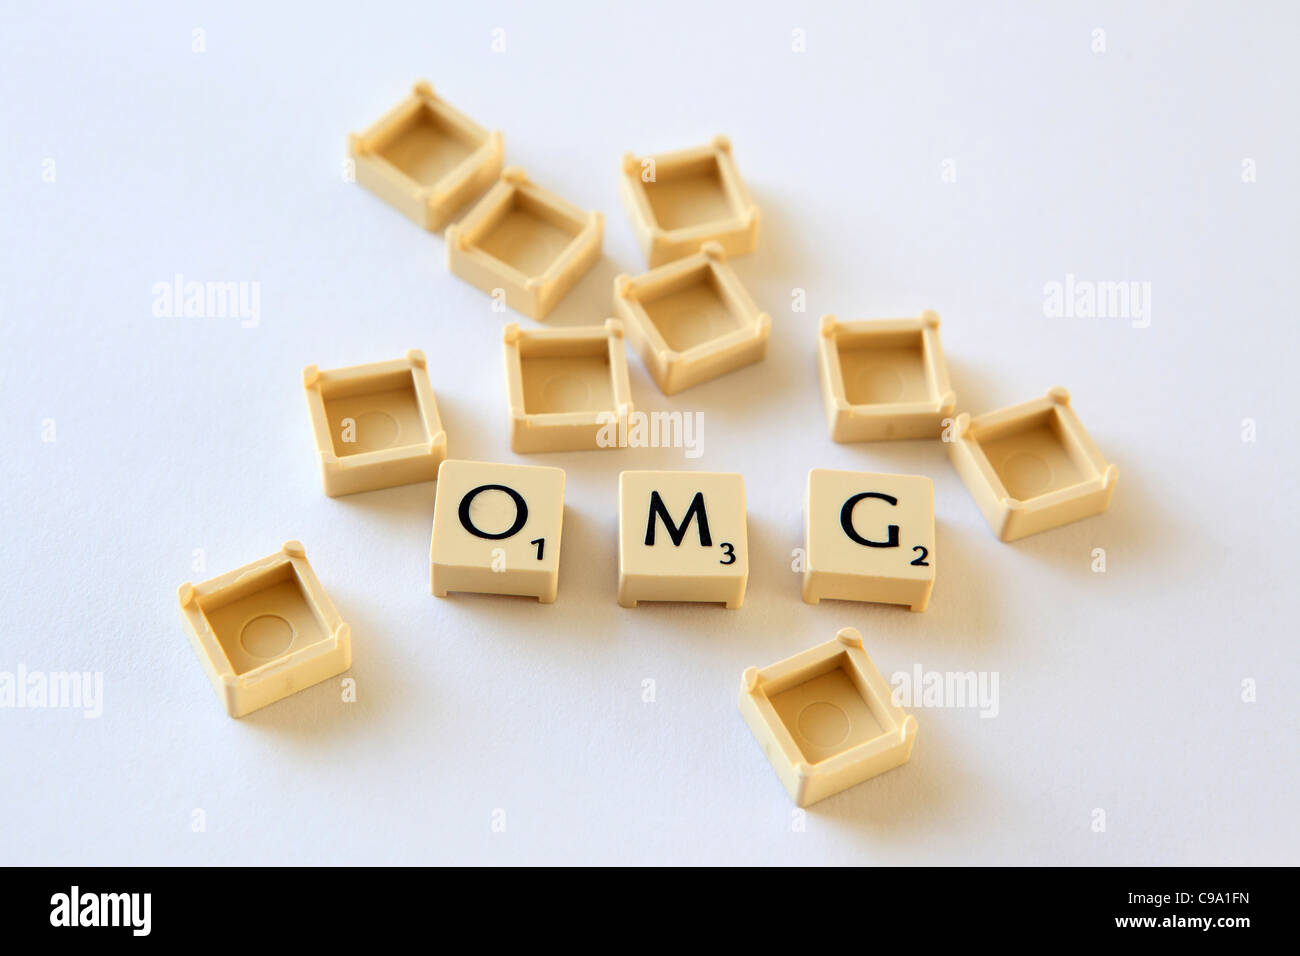 'Hello' en toutes lettres au Scrabble lettre carreaux carrés, sland txt sms chat parler, photographie Banque D'Images